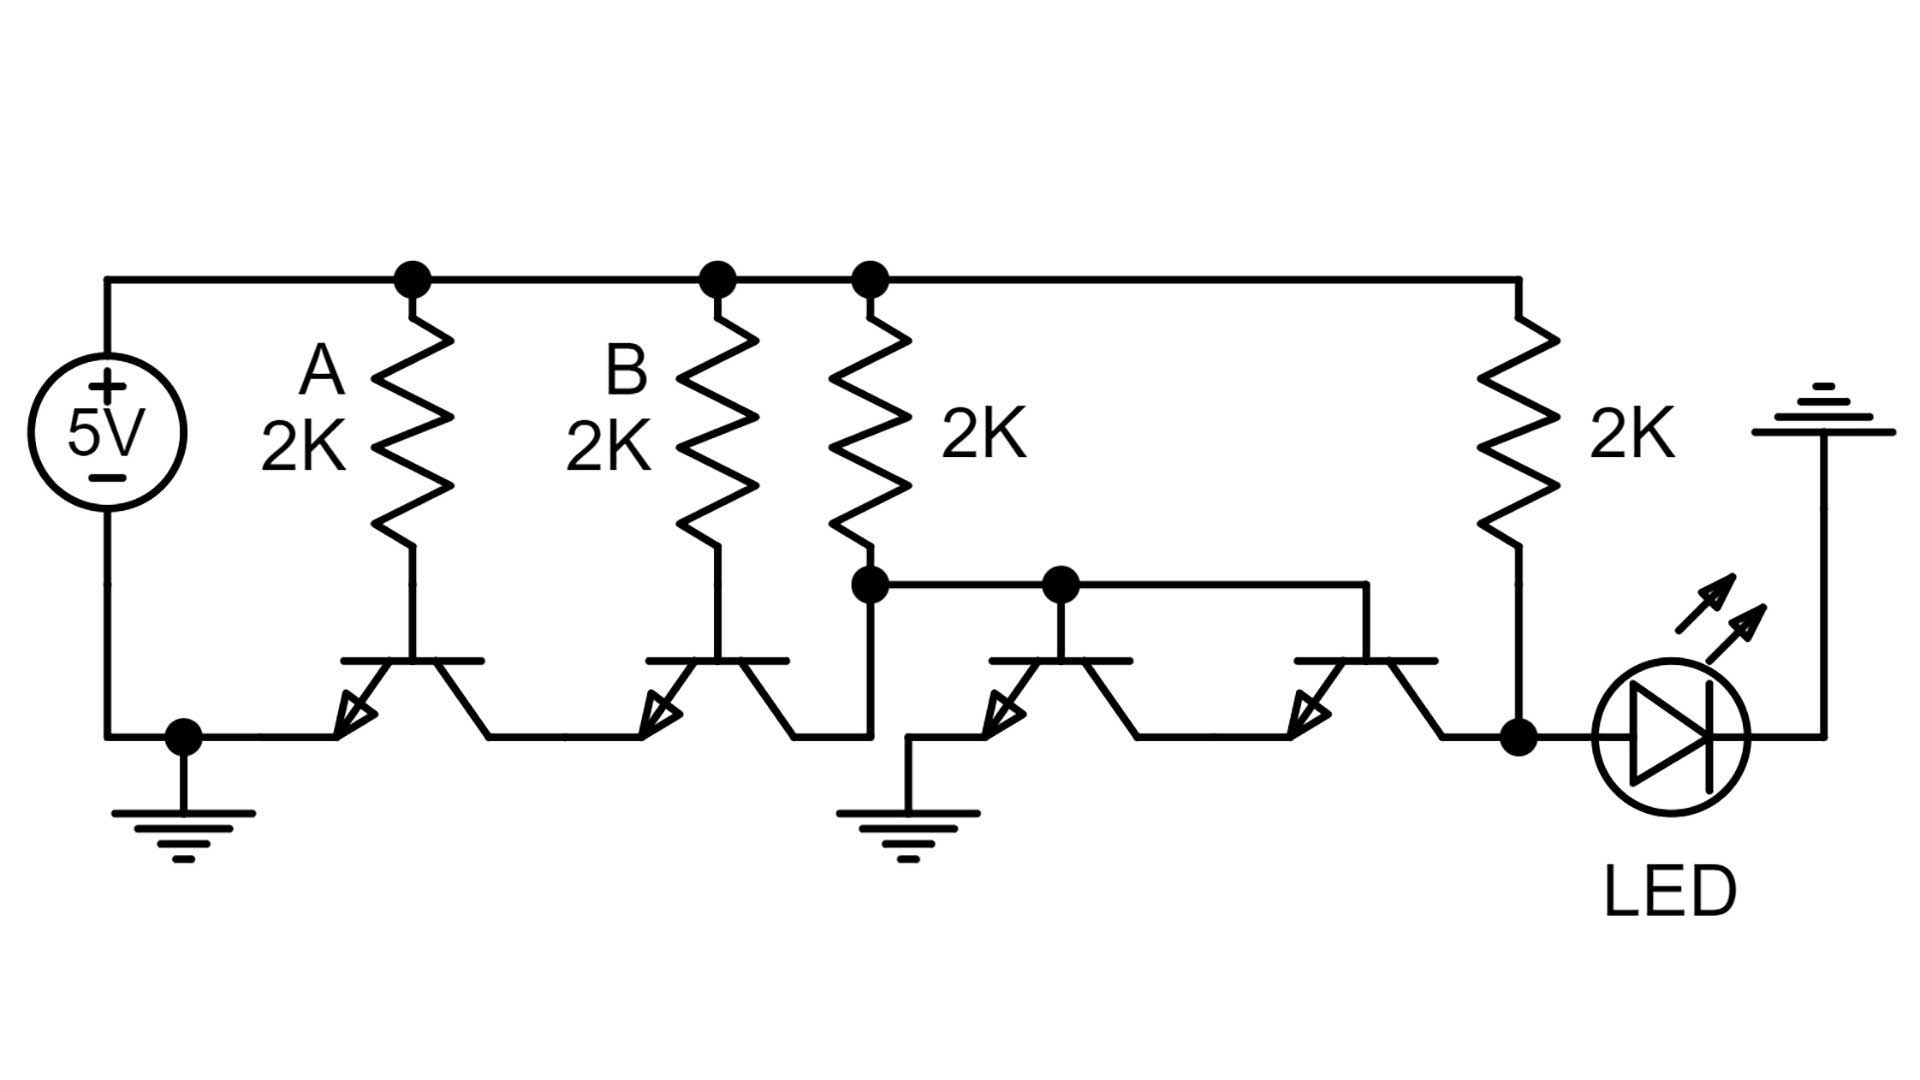 and gate 4 circuit diagram